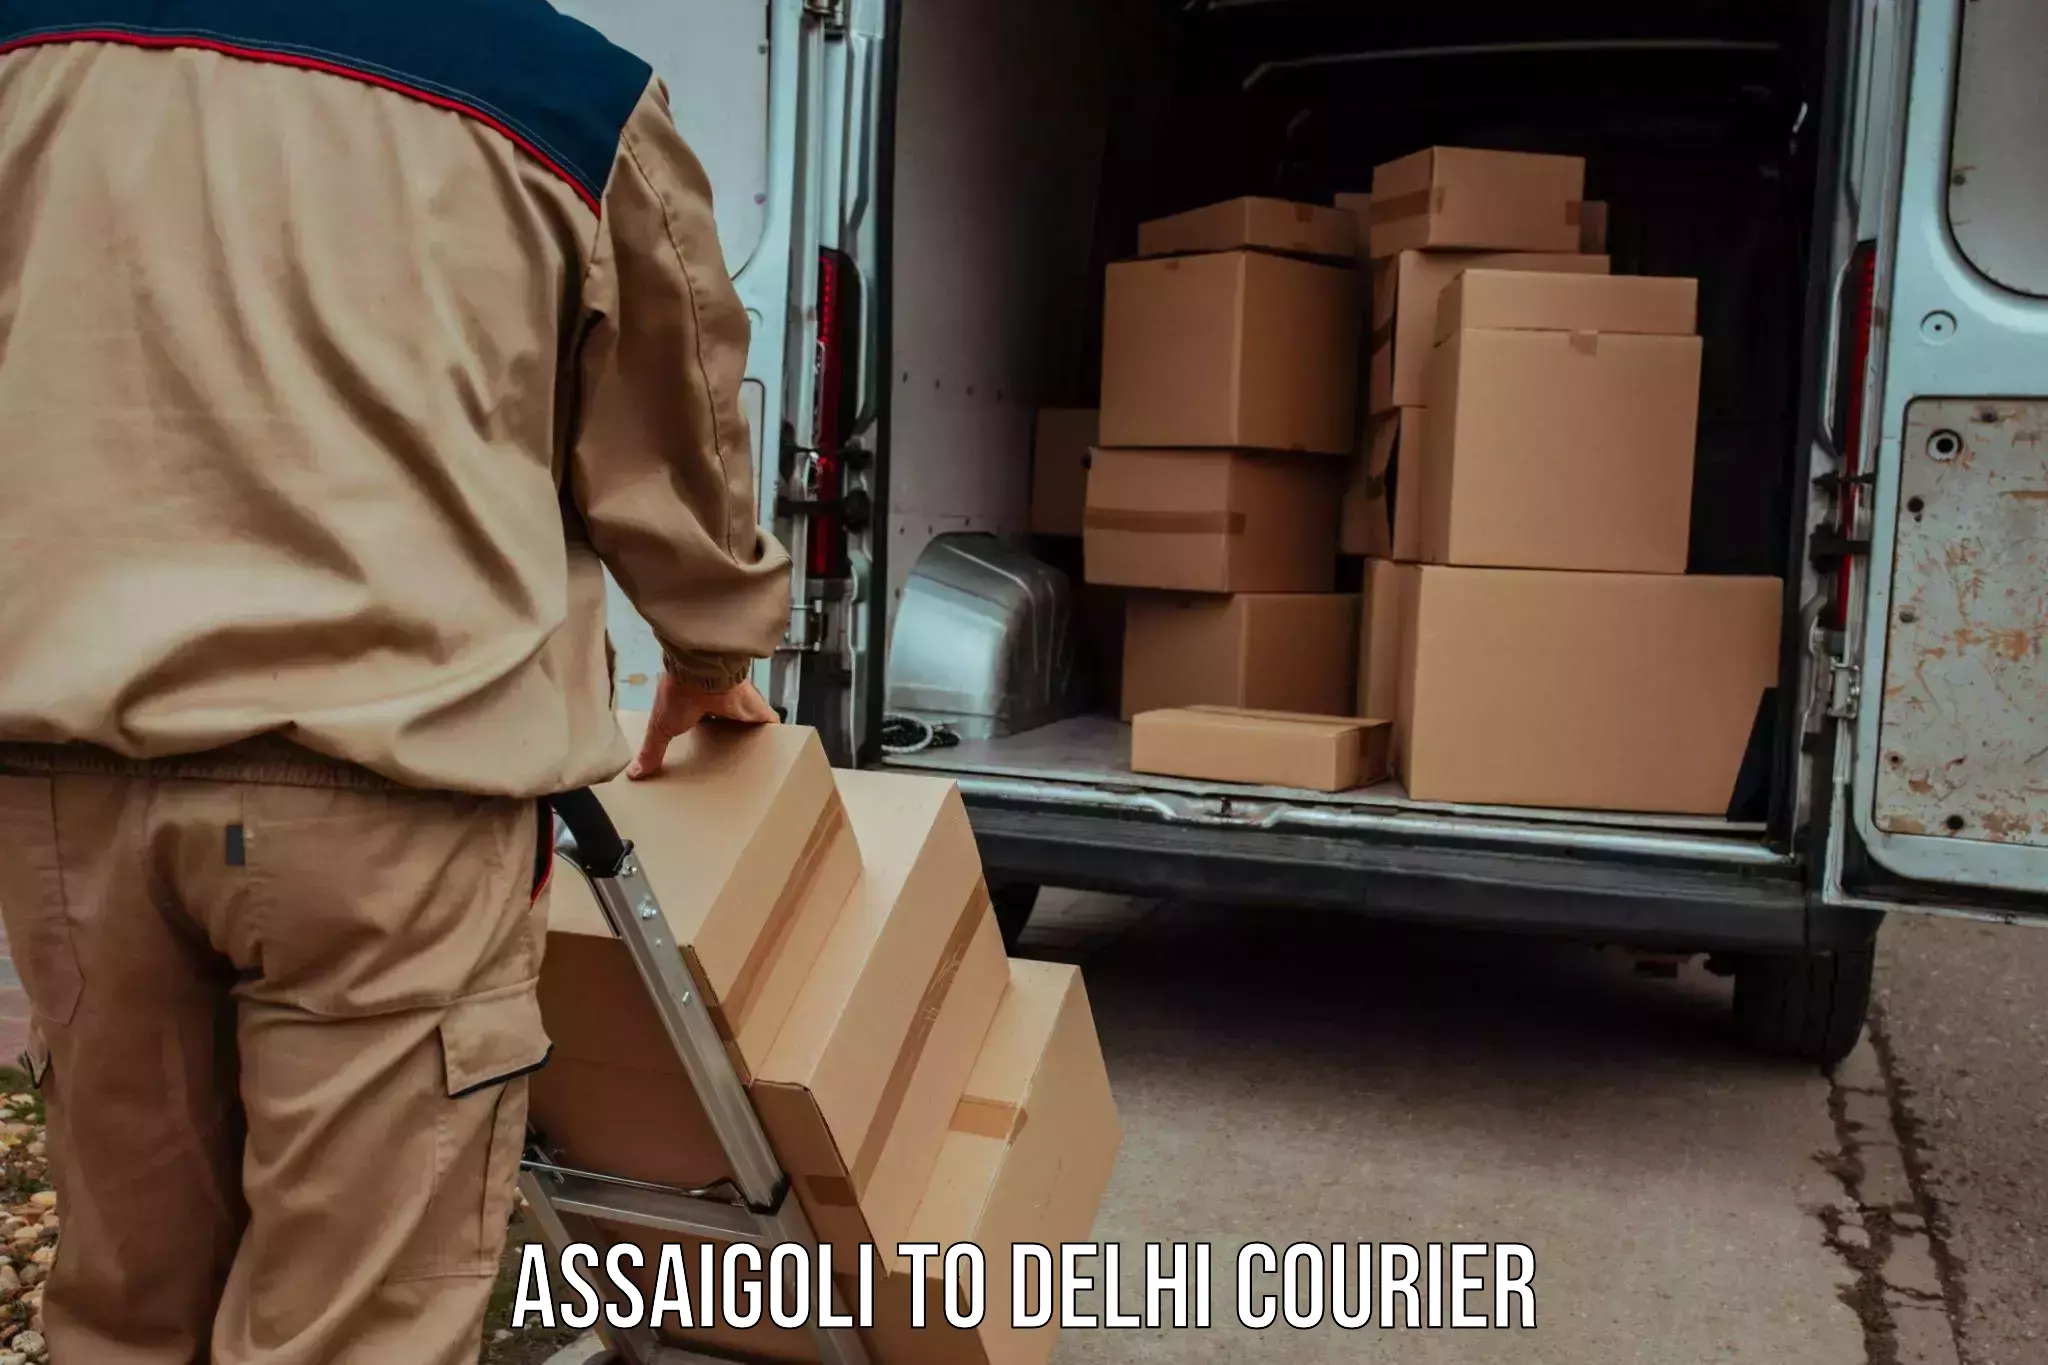 Courier service innovation Assaigoli to Delhi